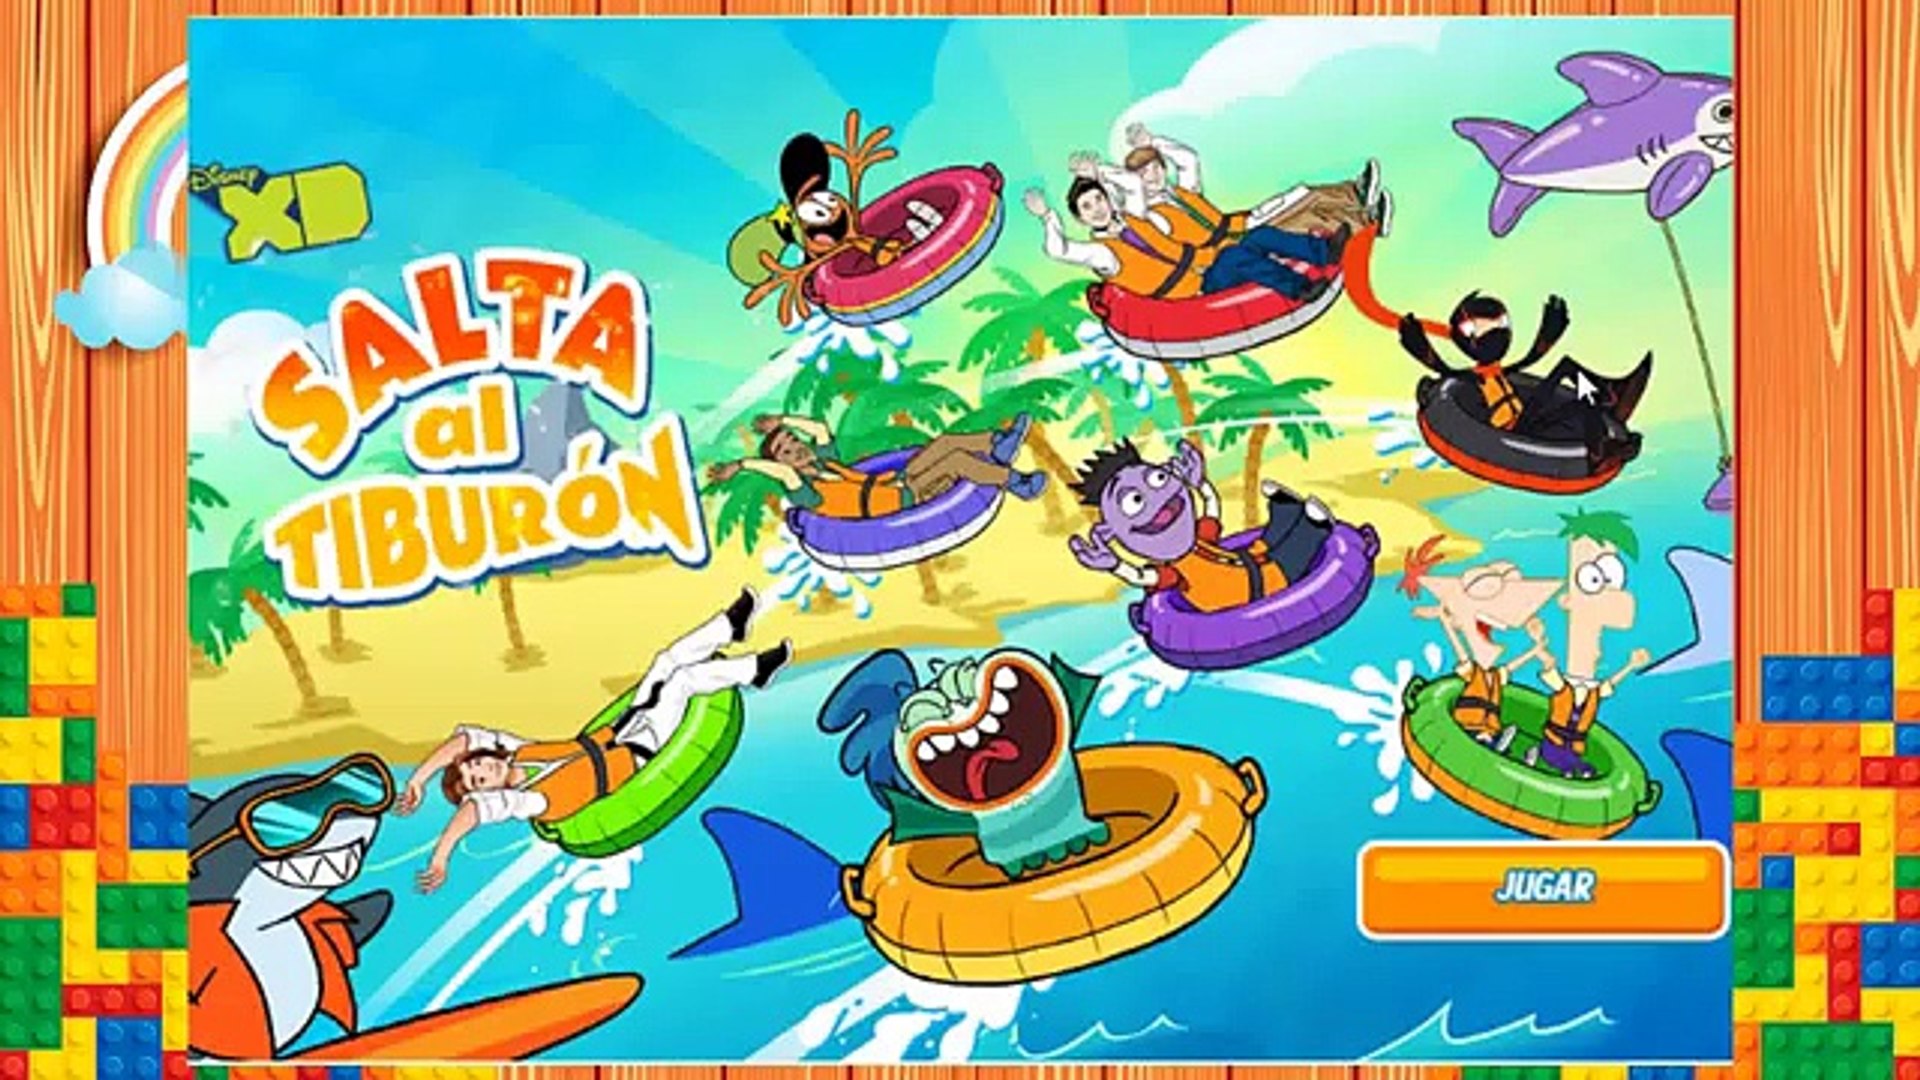 Disney XD Juegos, Juegos Disney Channel, Salta al Tiburon, juego Phineas y  Ferb - video Dailymotion